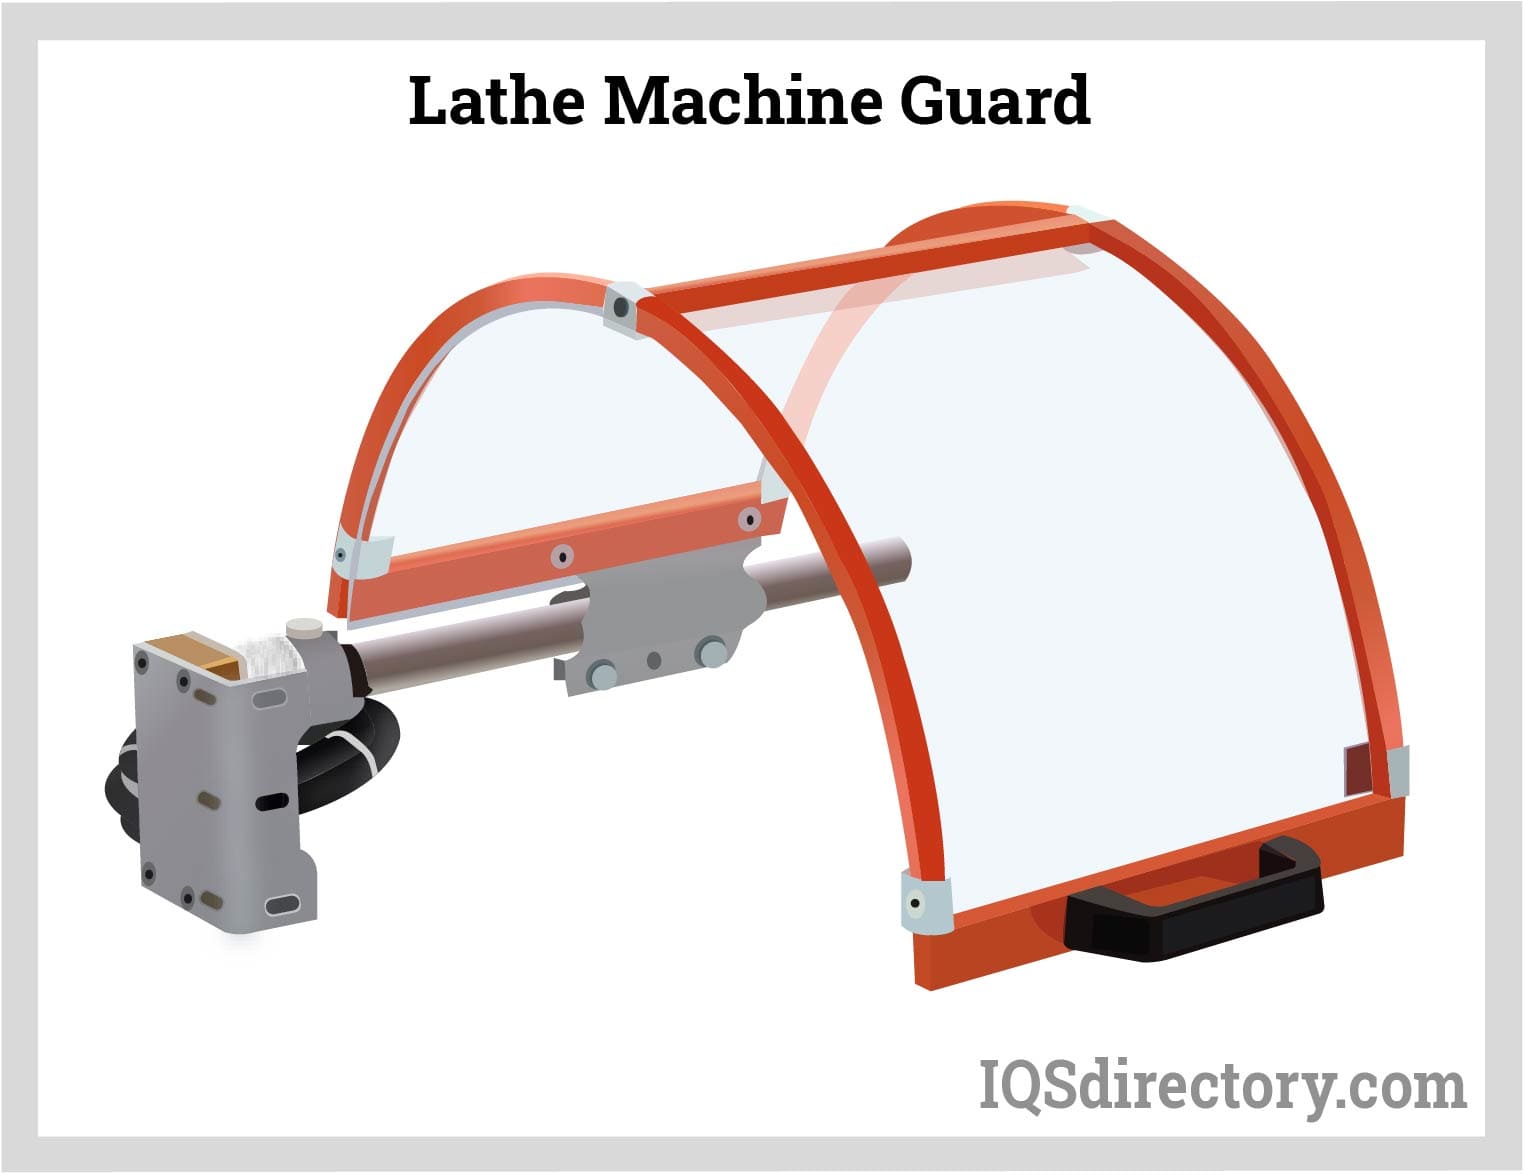 Lathe Machine Guard